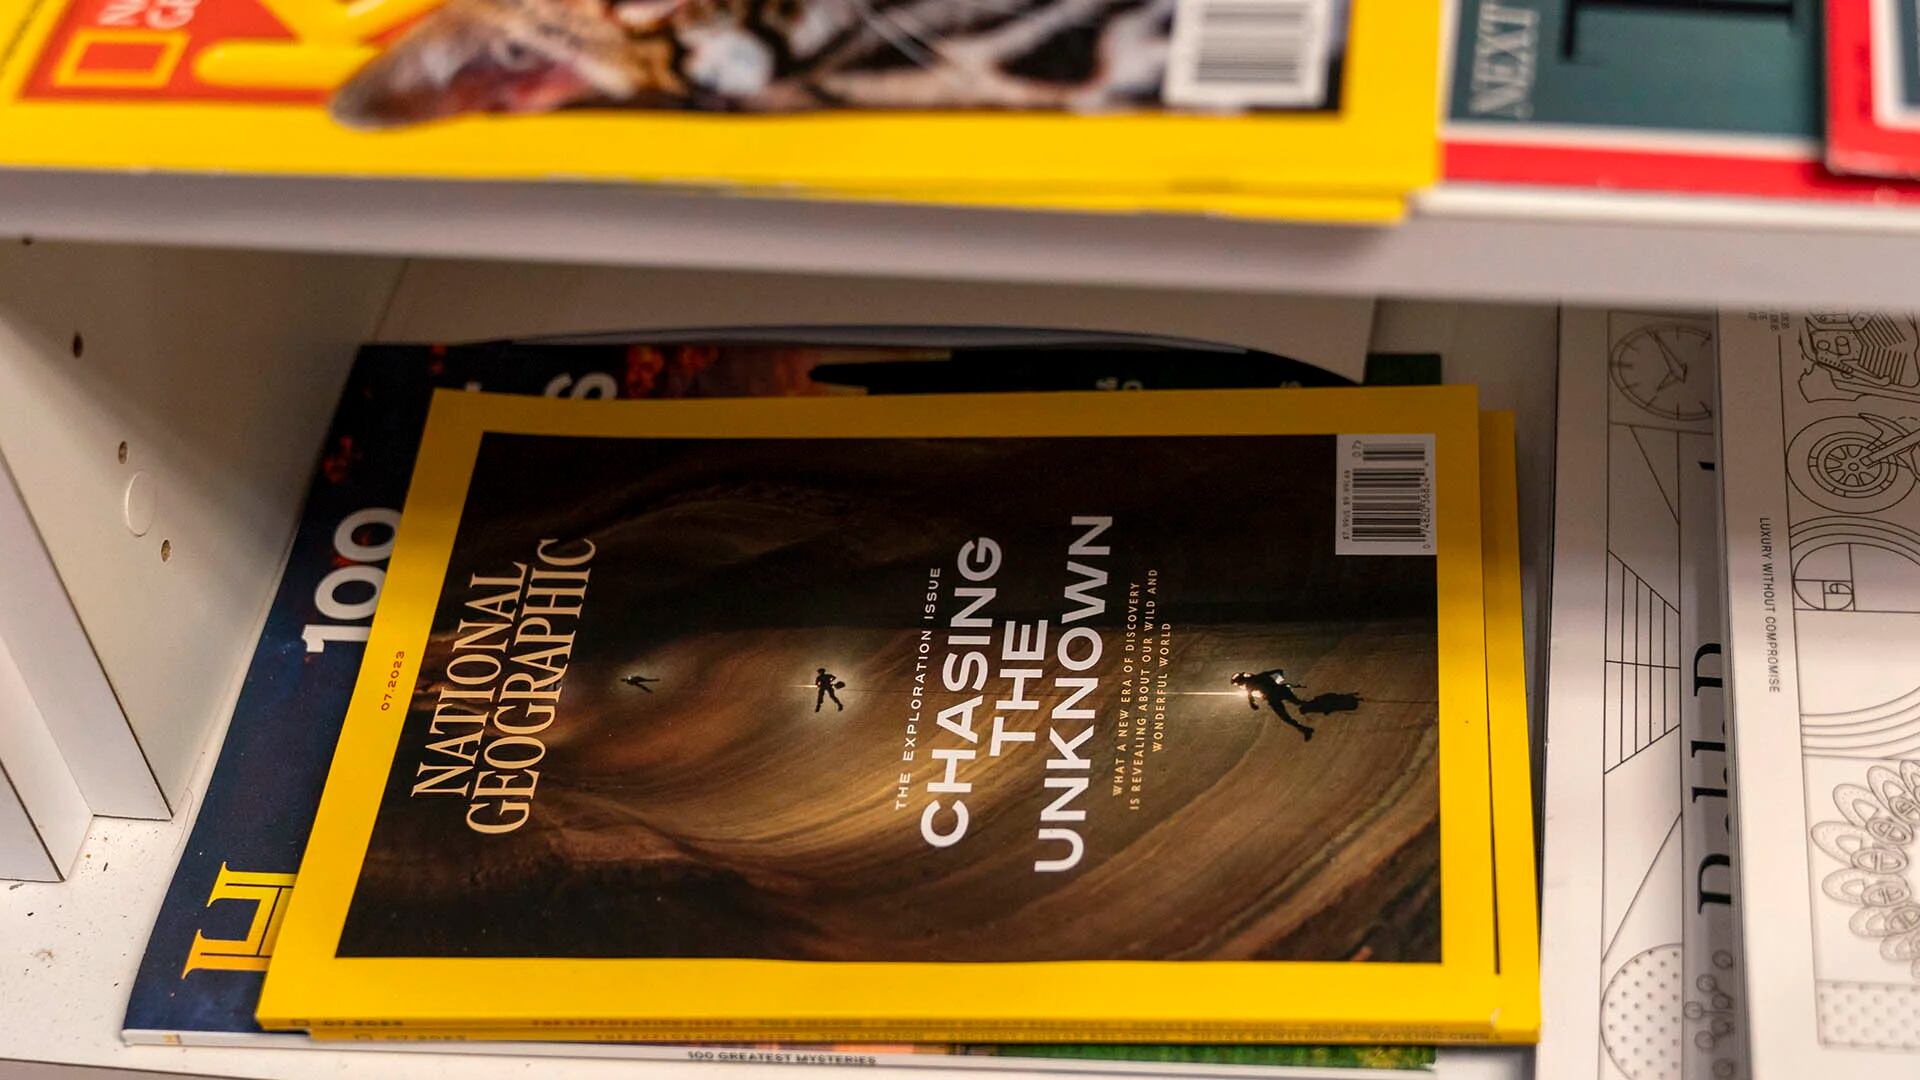 National Geographic sigue siendo una de las revistas más leídas de Estados Unido: a fines de 2022, contaba con 1,8 millones de suscriptores (Foto: AP/Jacquelyn Martin)